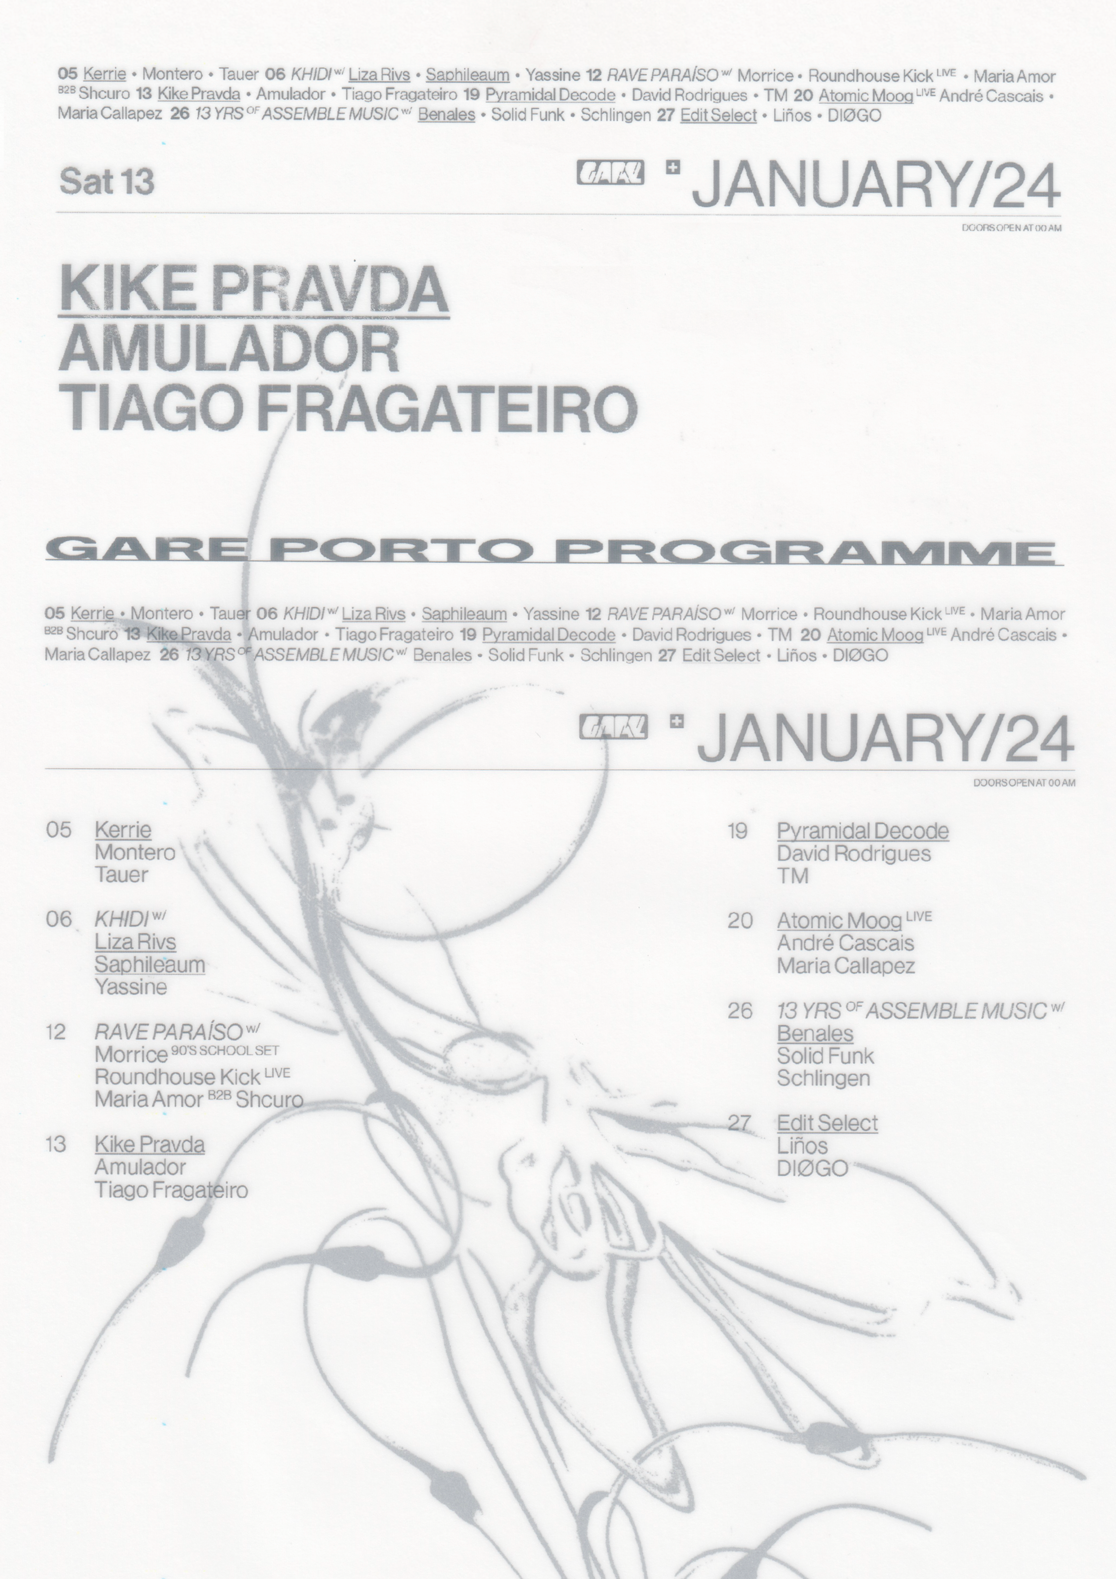 Kike Pravda + Amulador + Tiago Fragateiro - フライヤー表